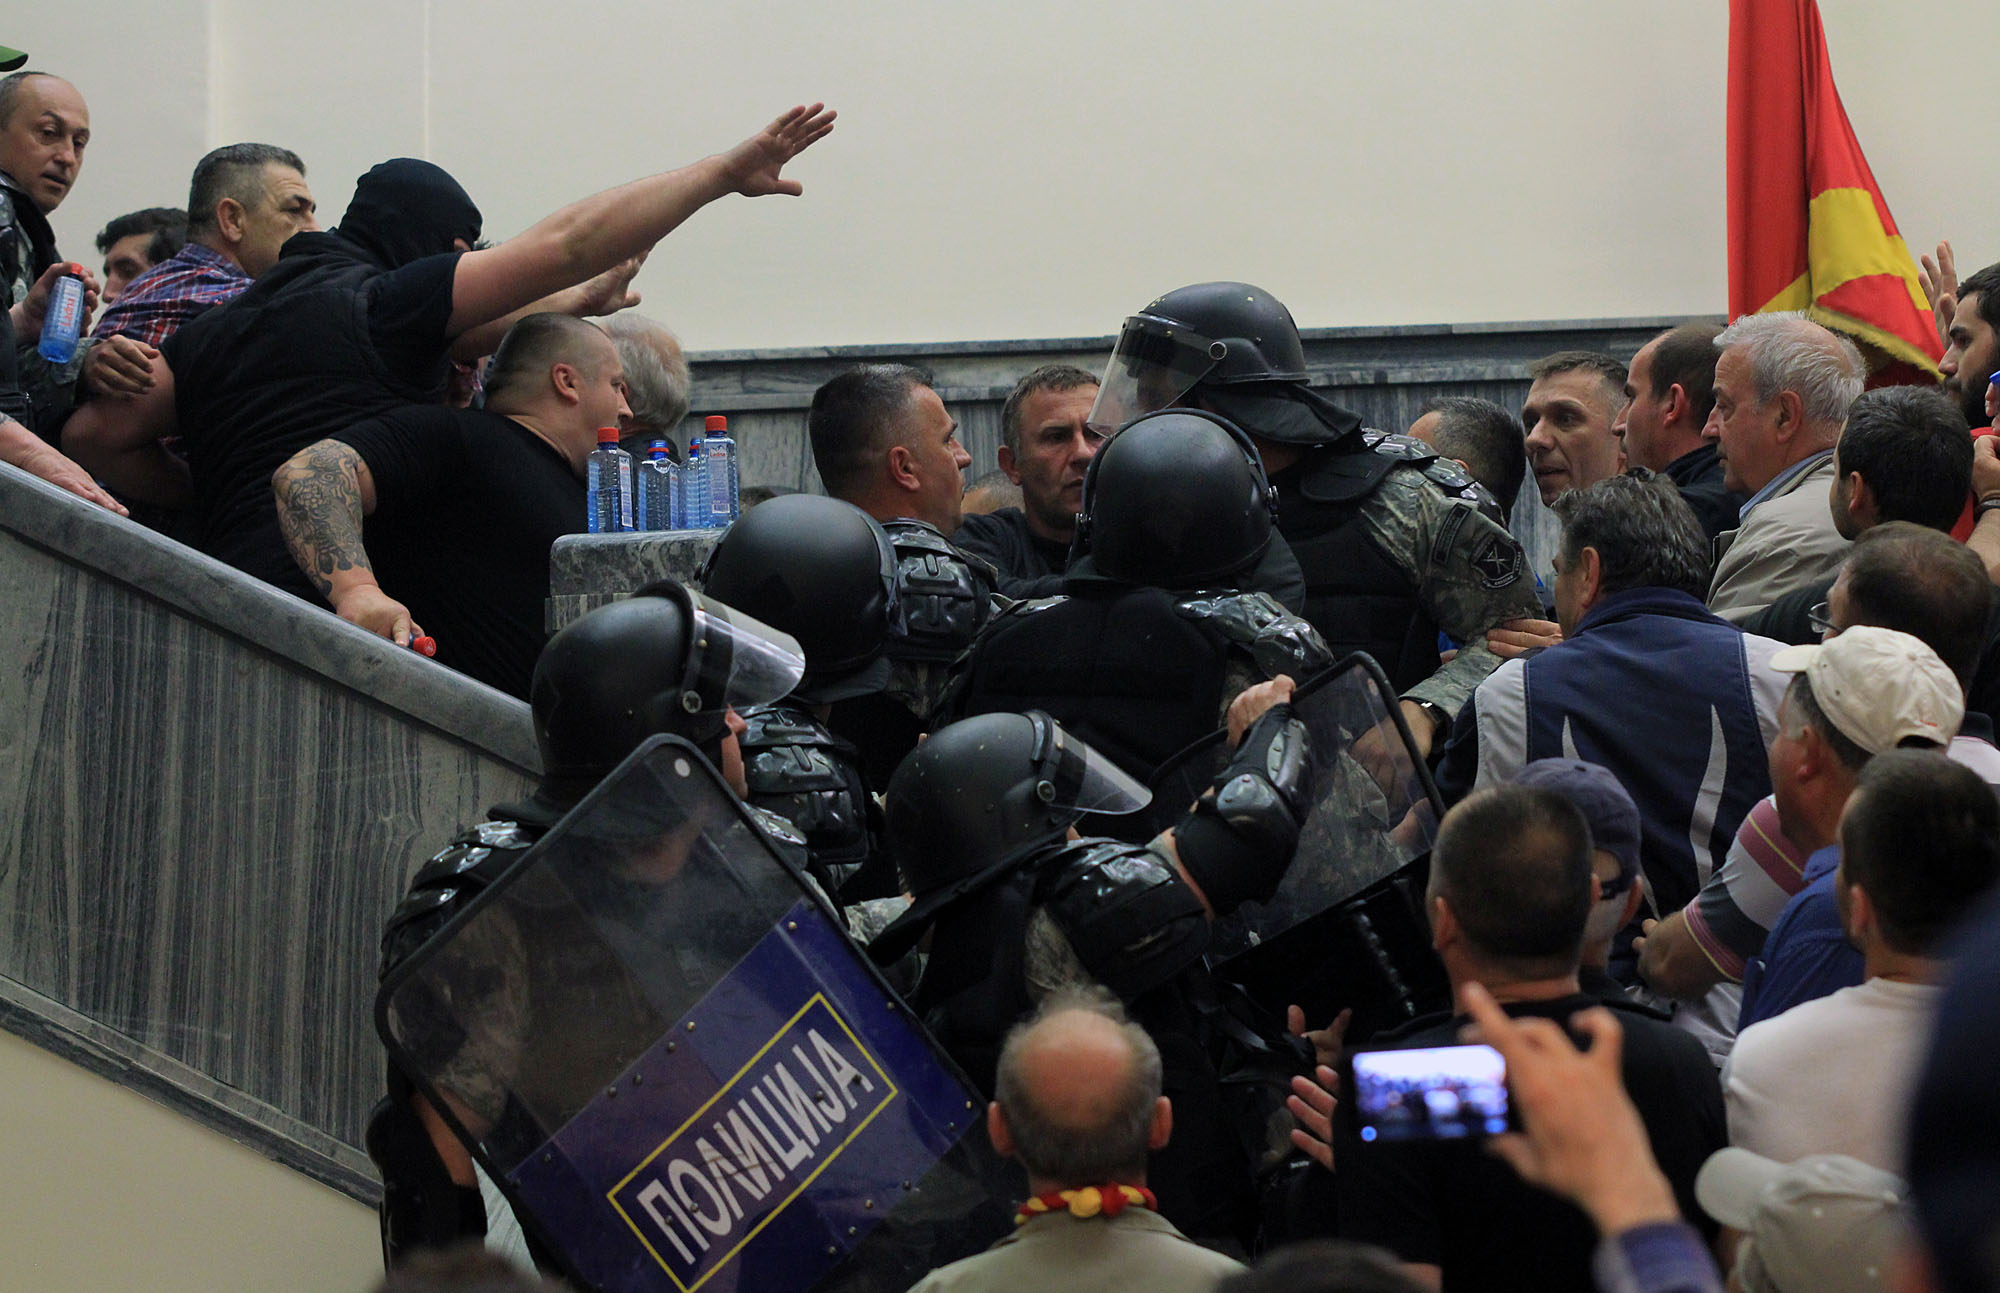 Штурм парламента в Македонии: что происходит и почему это выгодно России